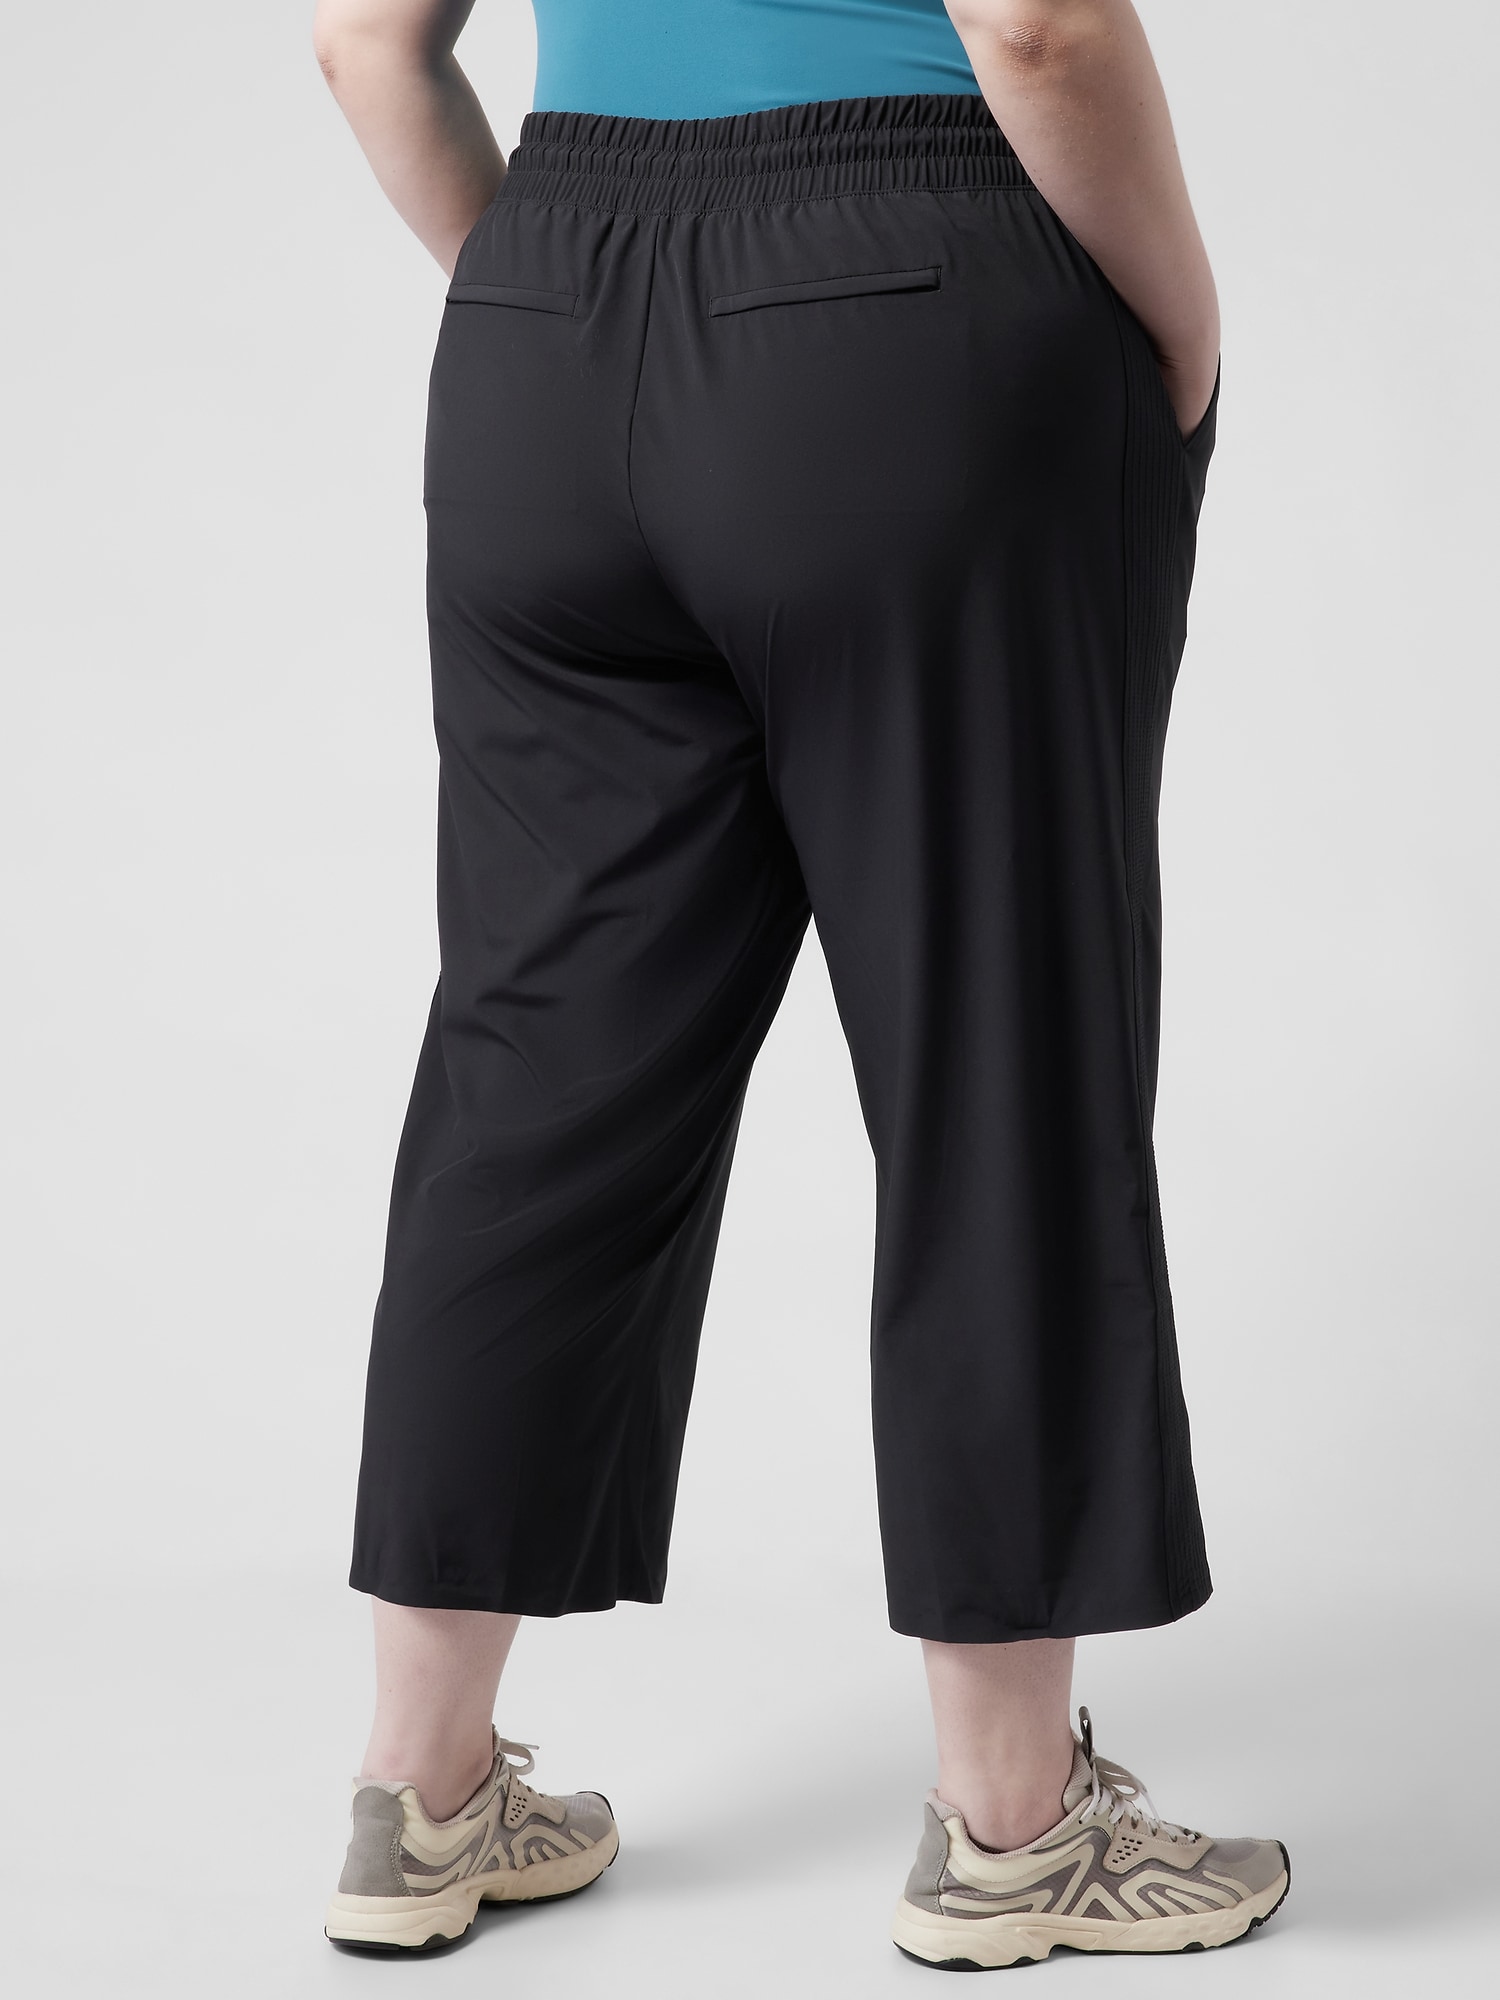 Tweed Motif Slim Leg Pants Style 241189